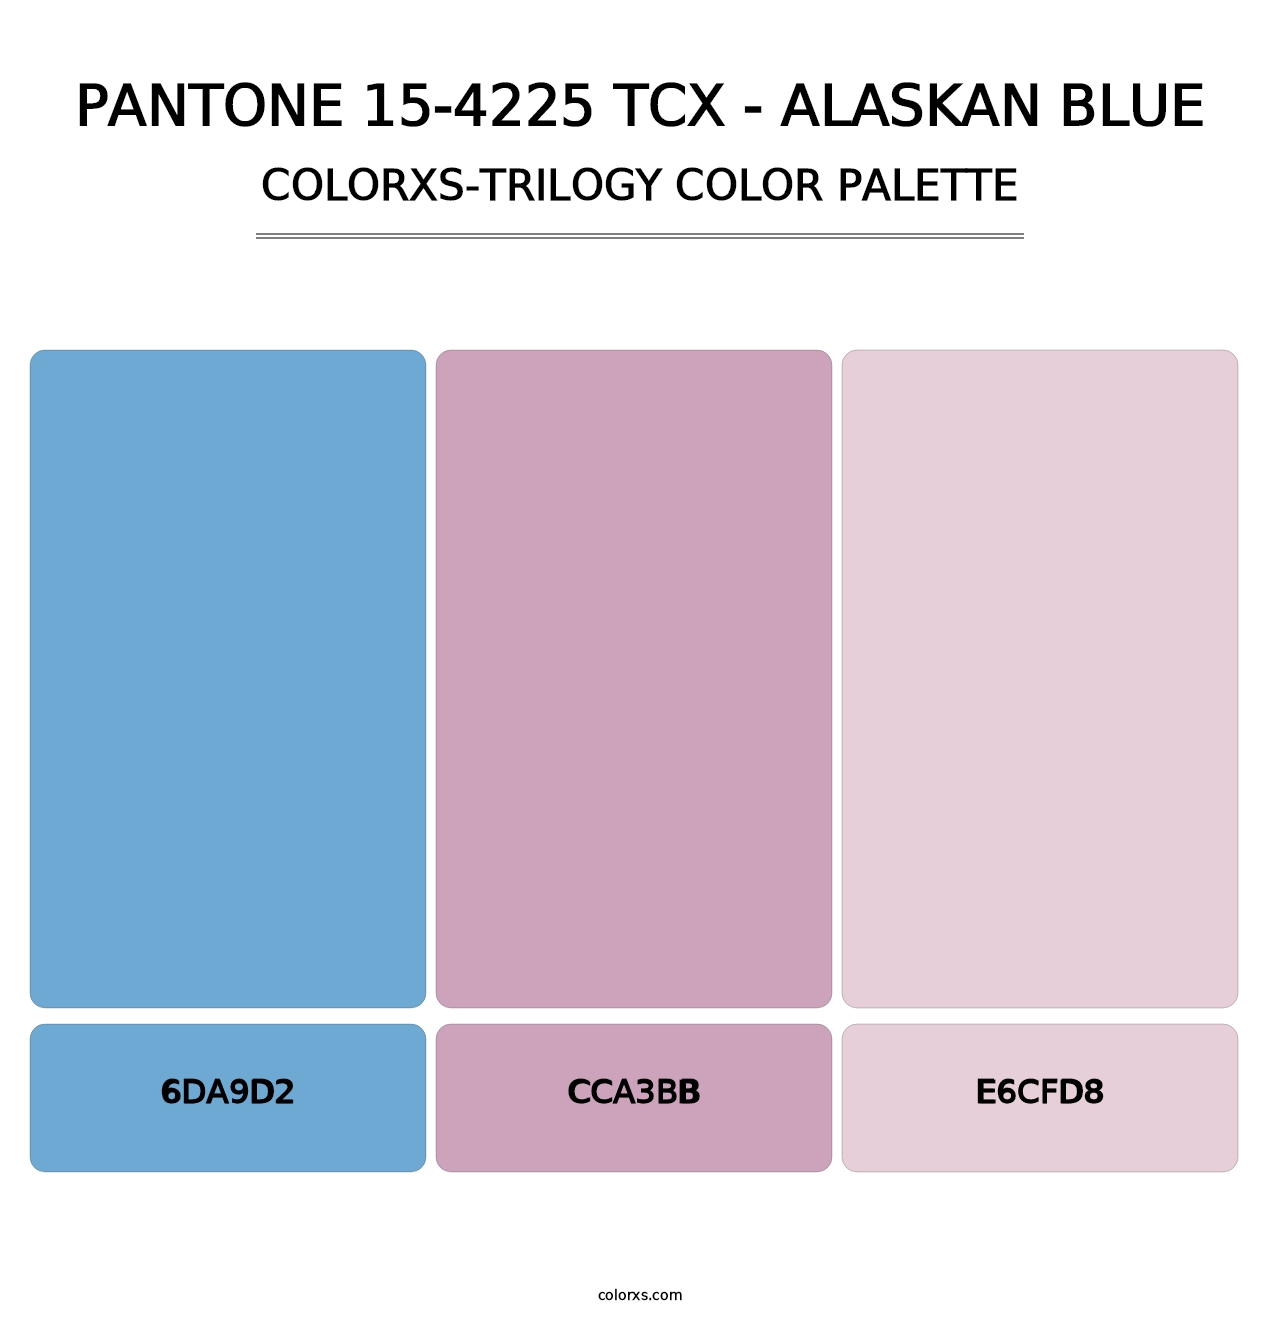 PANTONE 15-4225 TCX - Alaskan Blue - Colorxs Trilogy Palette